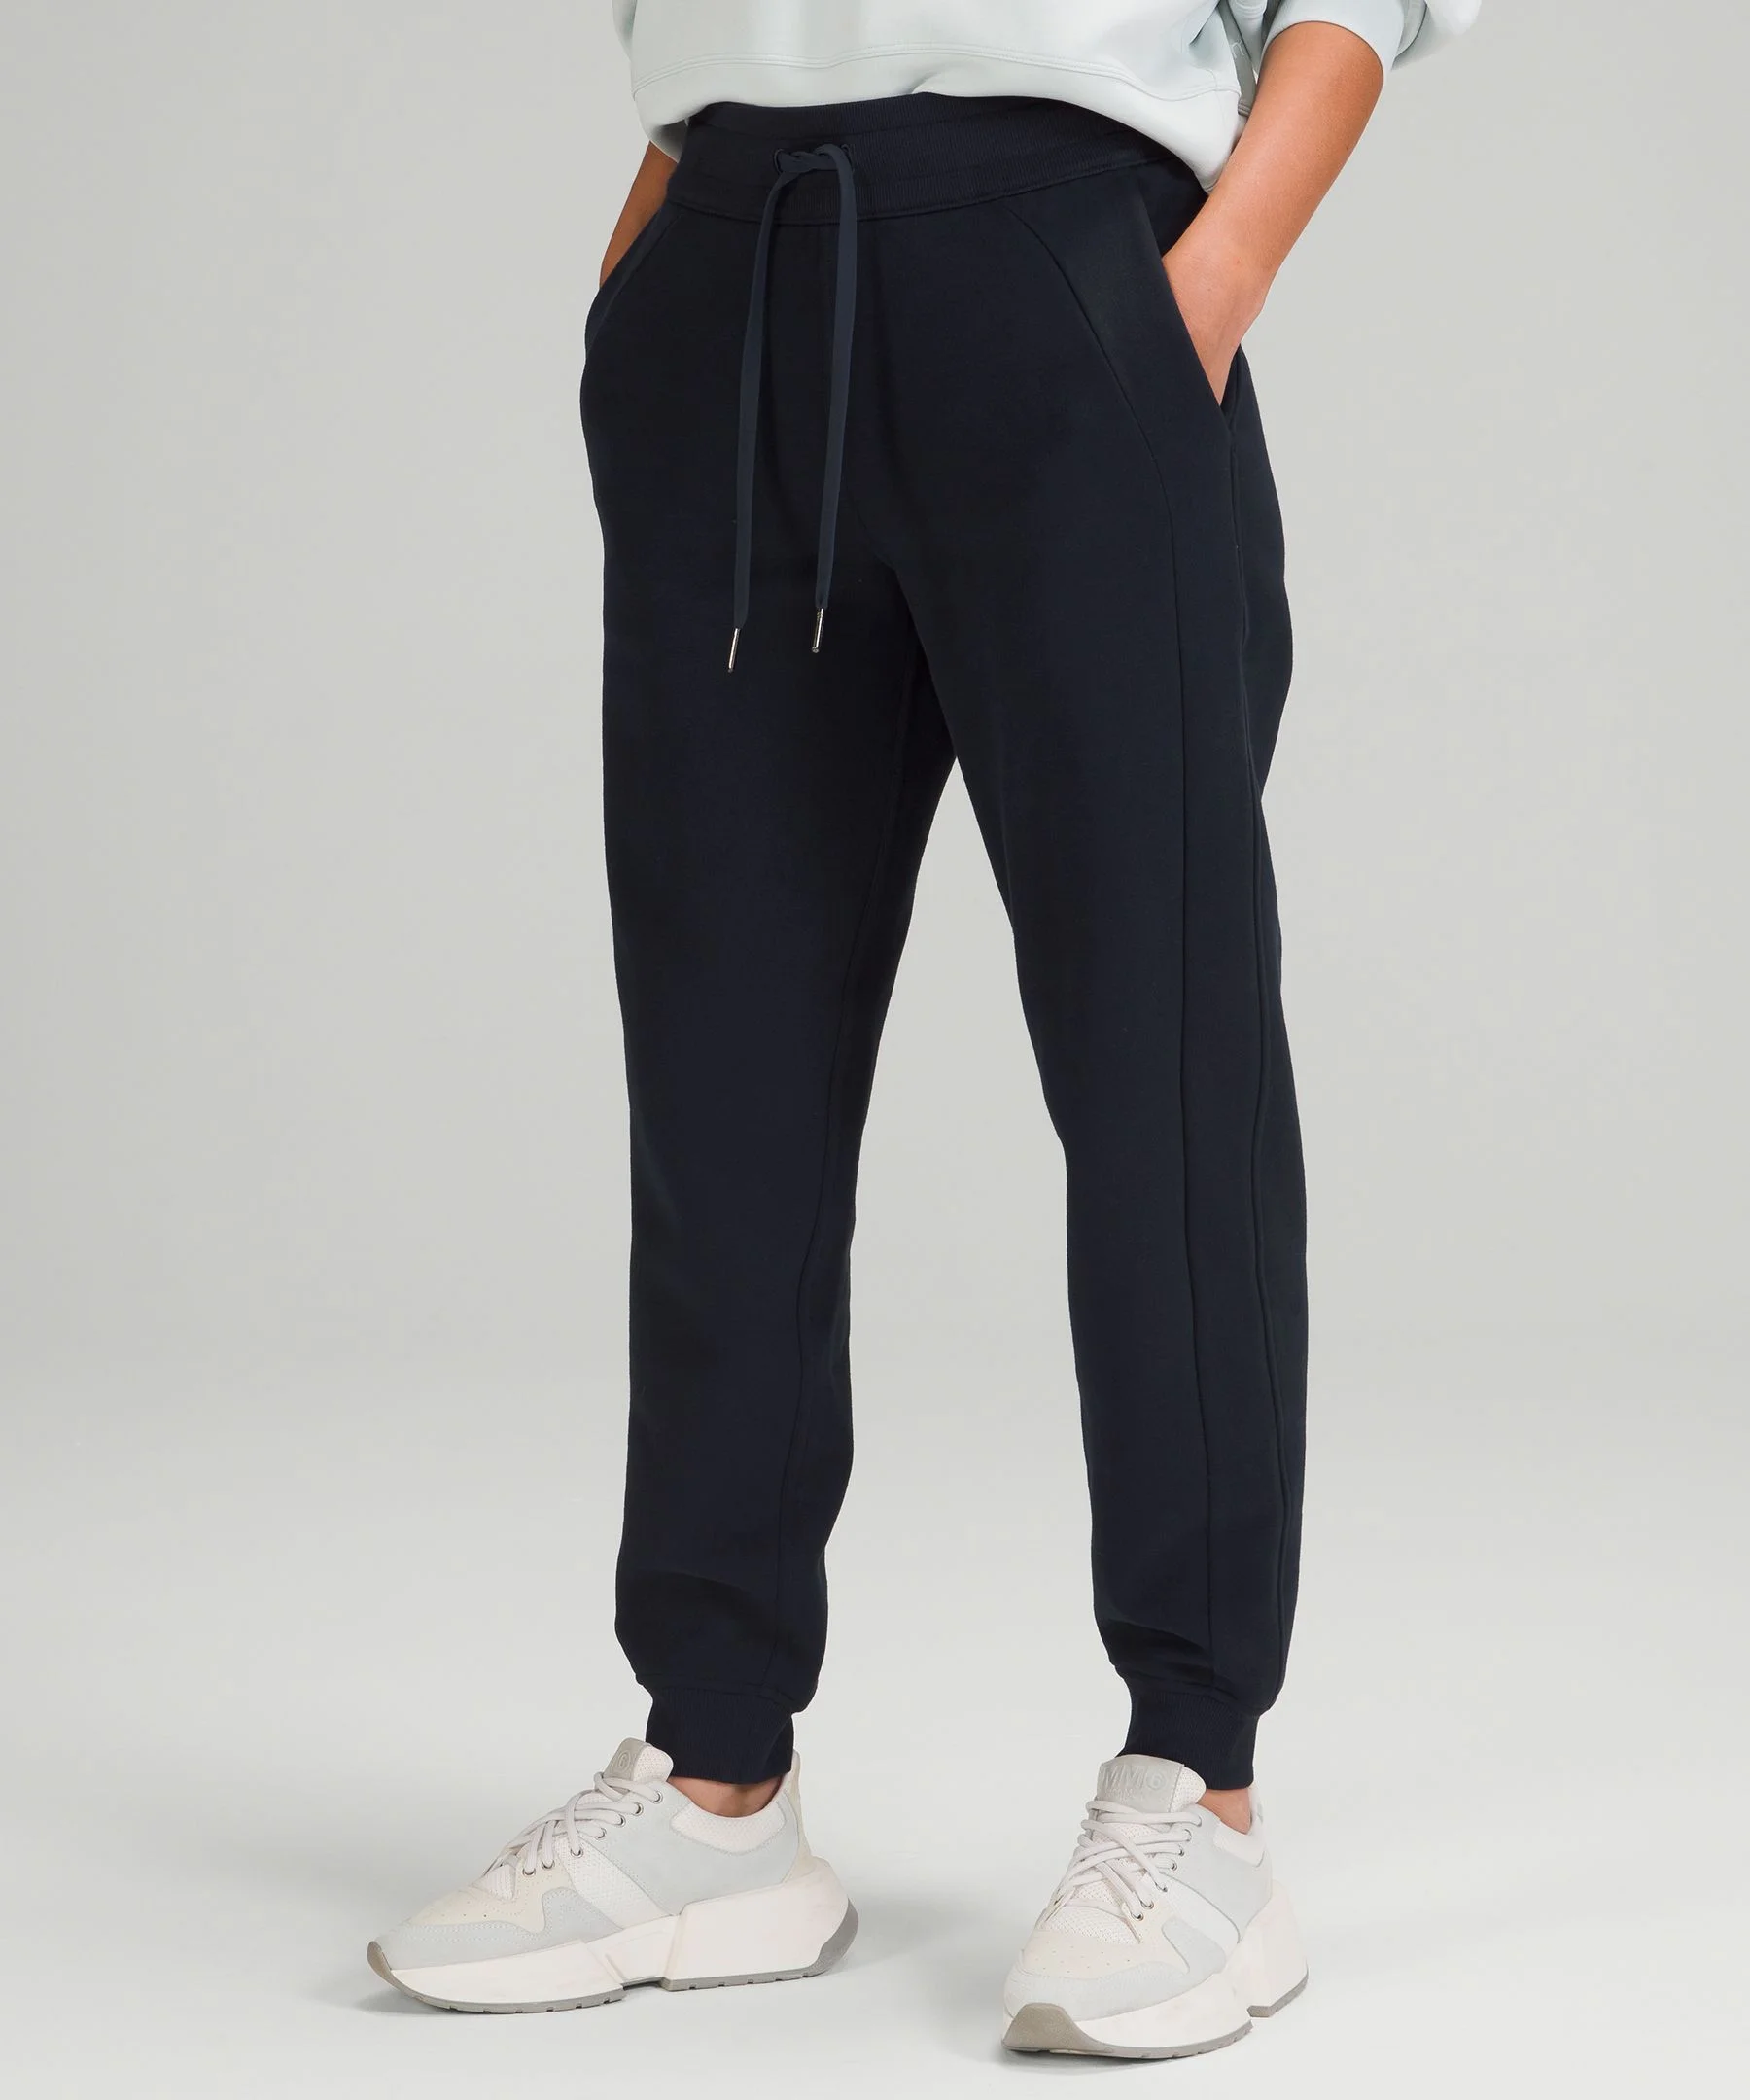 Pants & Jumpsuits, Lululemon Scuba Joggers Size 4